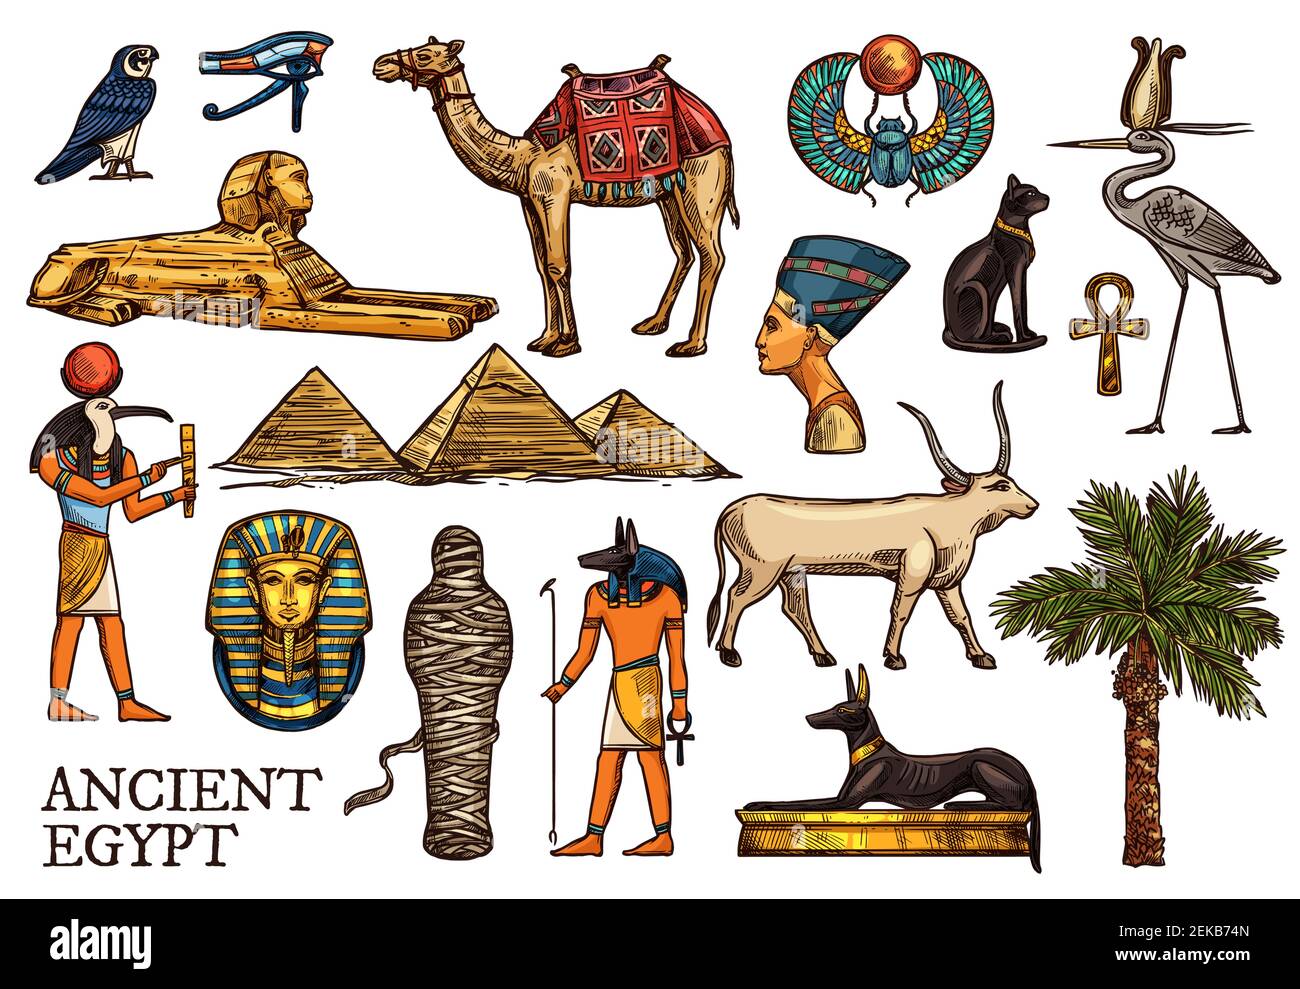 Altes Ägypten Vektor Skizzen der Religion, Reise-Symbole. Gott Anubis, pharaon Pyramiden und Sphinx, ankh, Mama und Horus Auge, Skarabäus, Tutanchamun, BL Stock Vektor